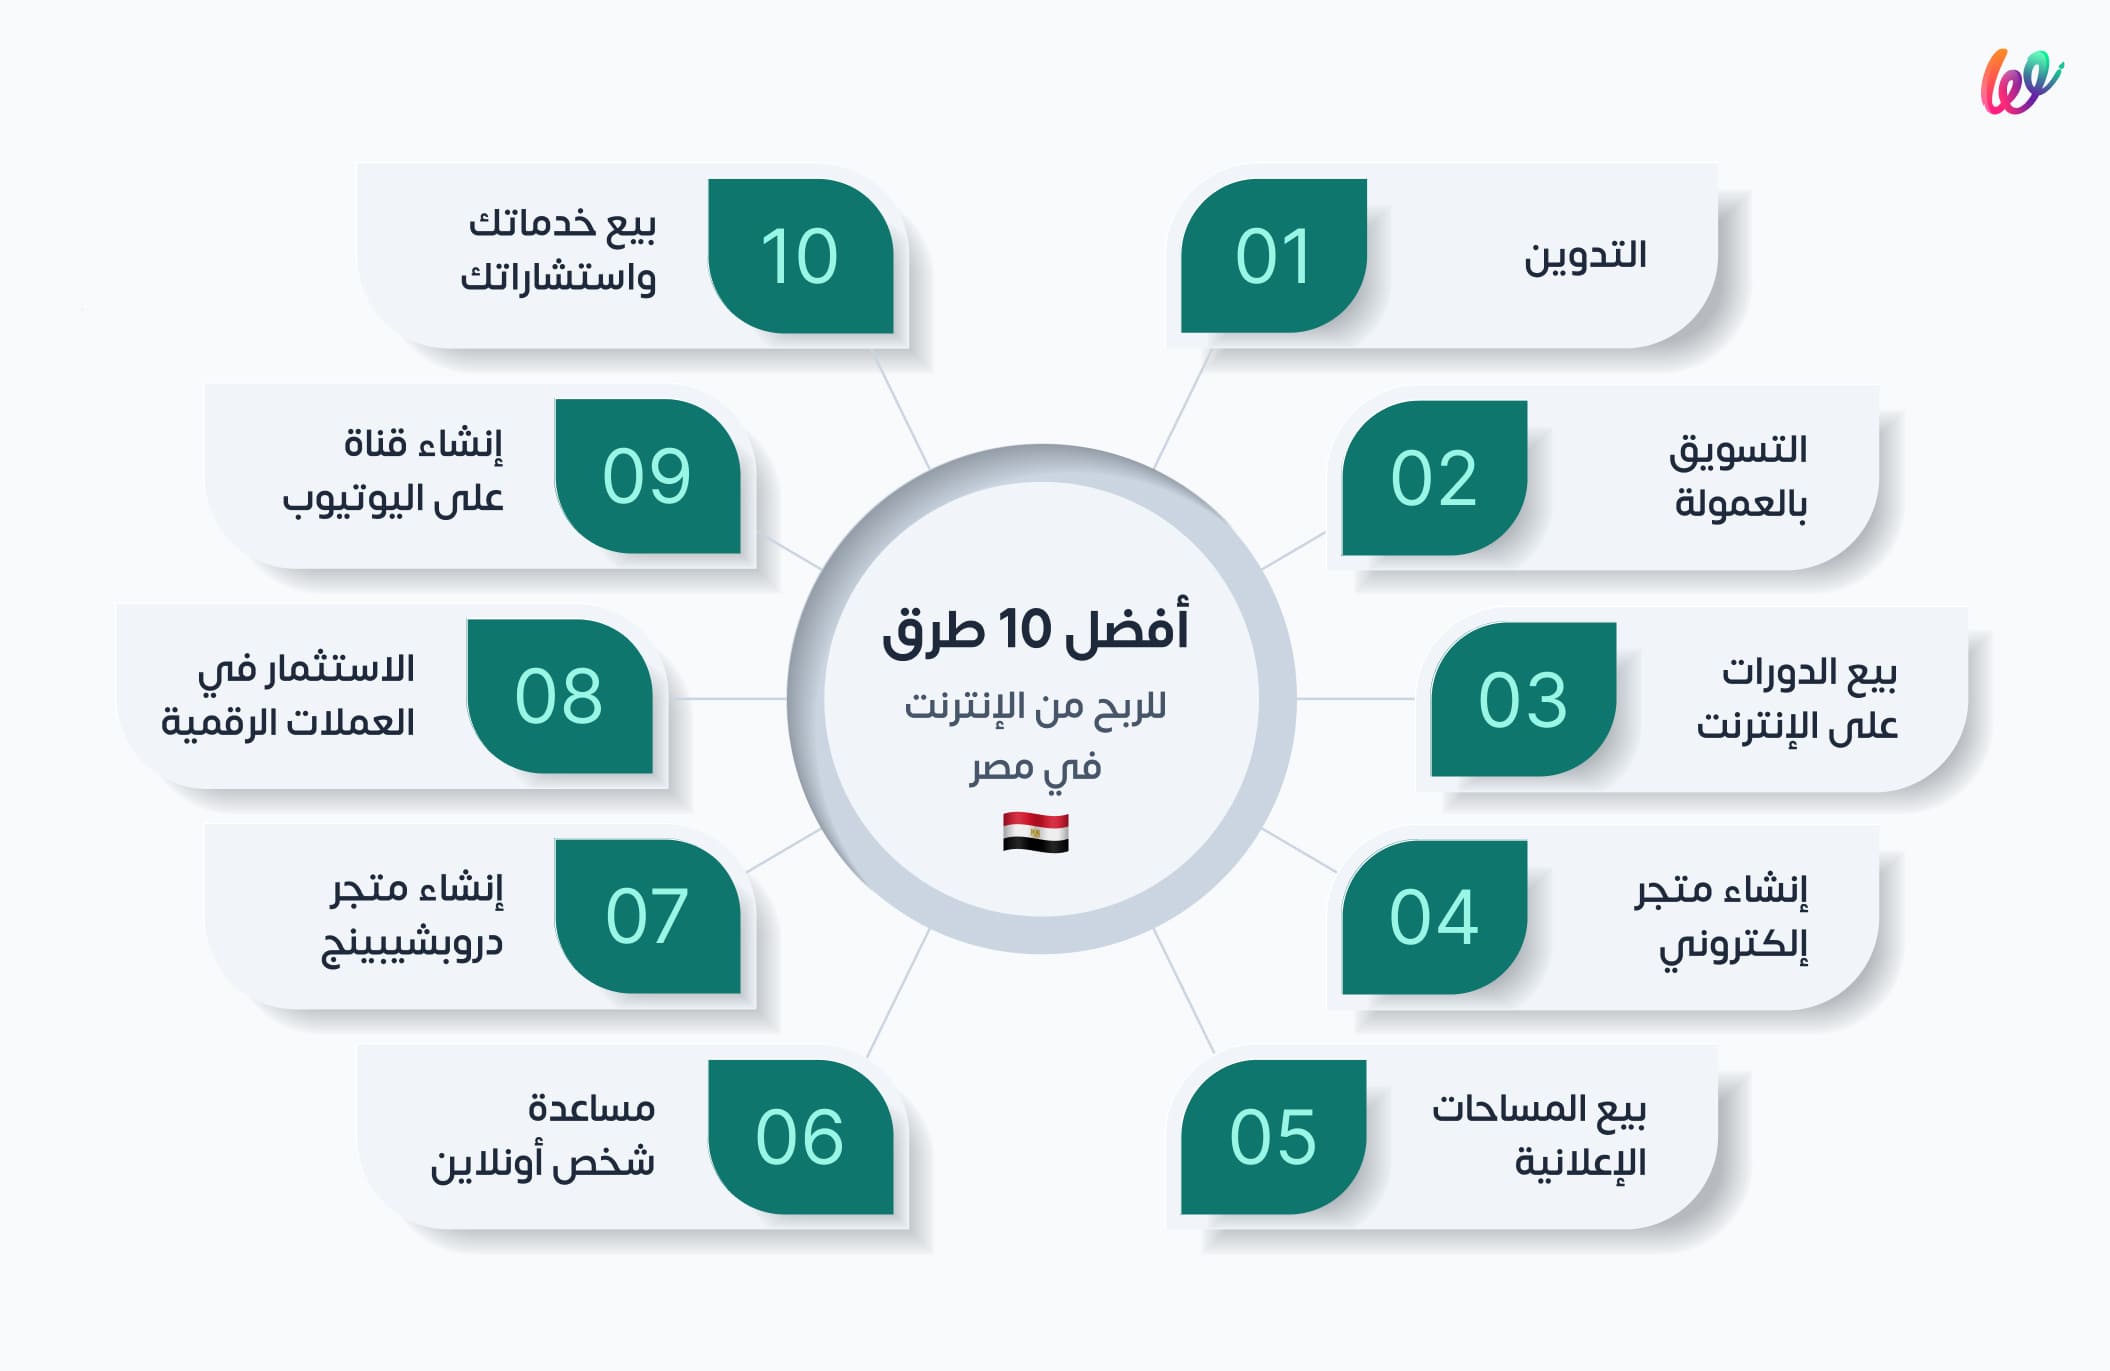 أفضل 10 طرق للربح من الإنترنت في مصر